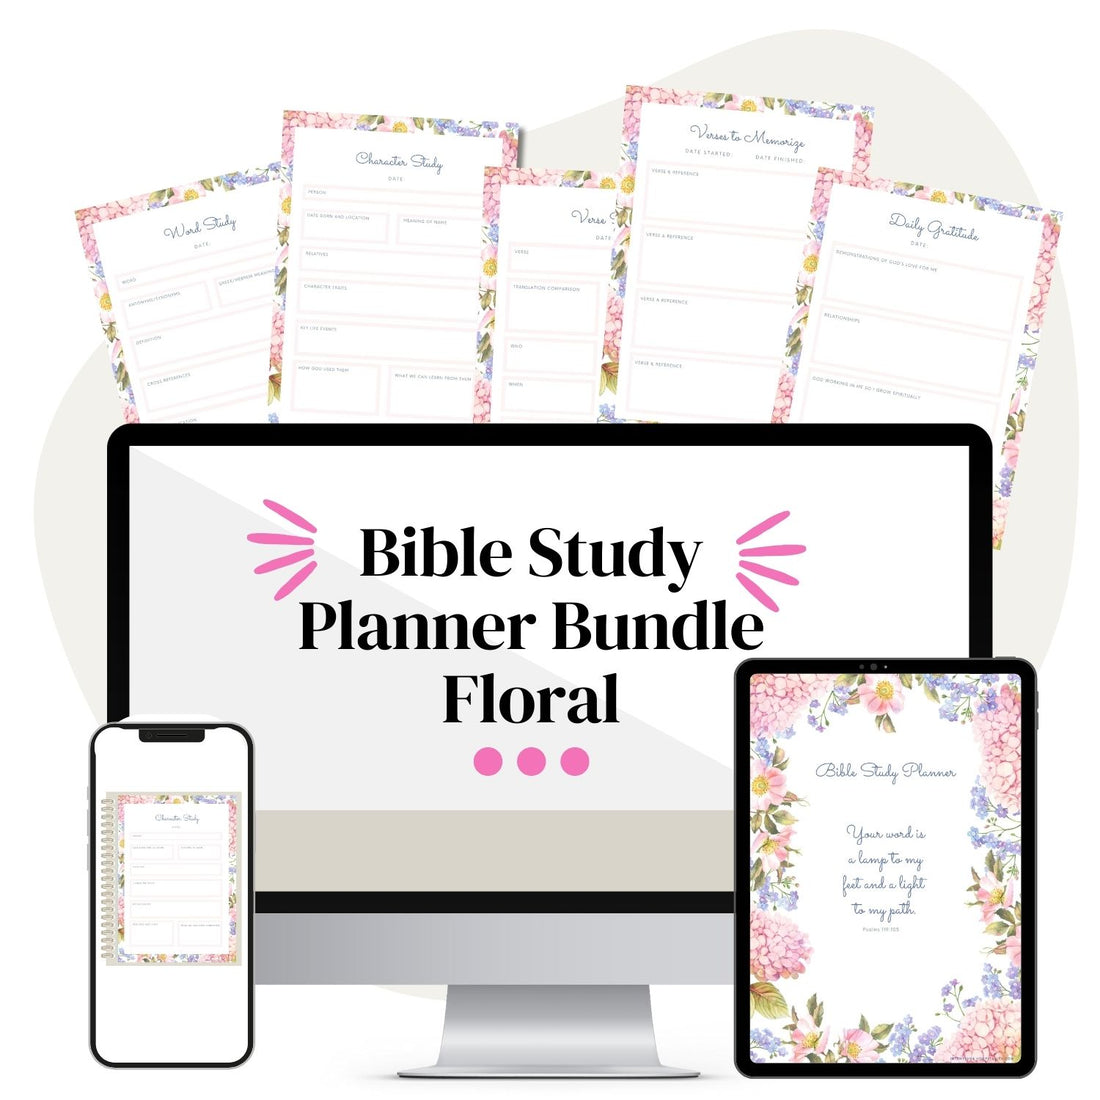 Bible Study Planner Bundle (Floral)